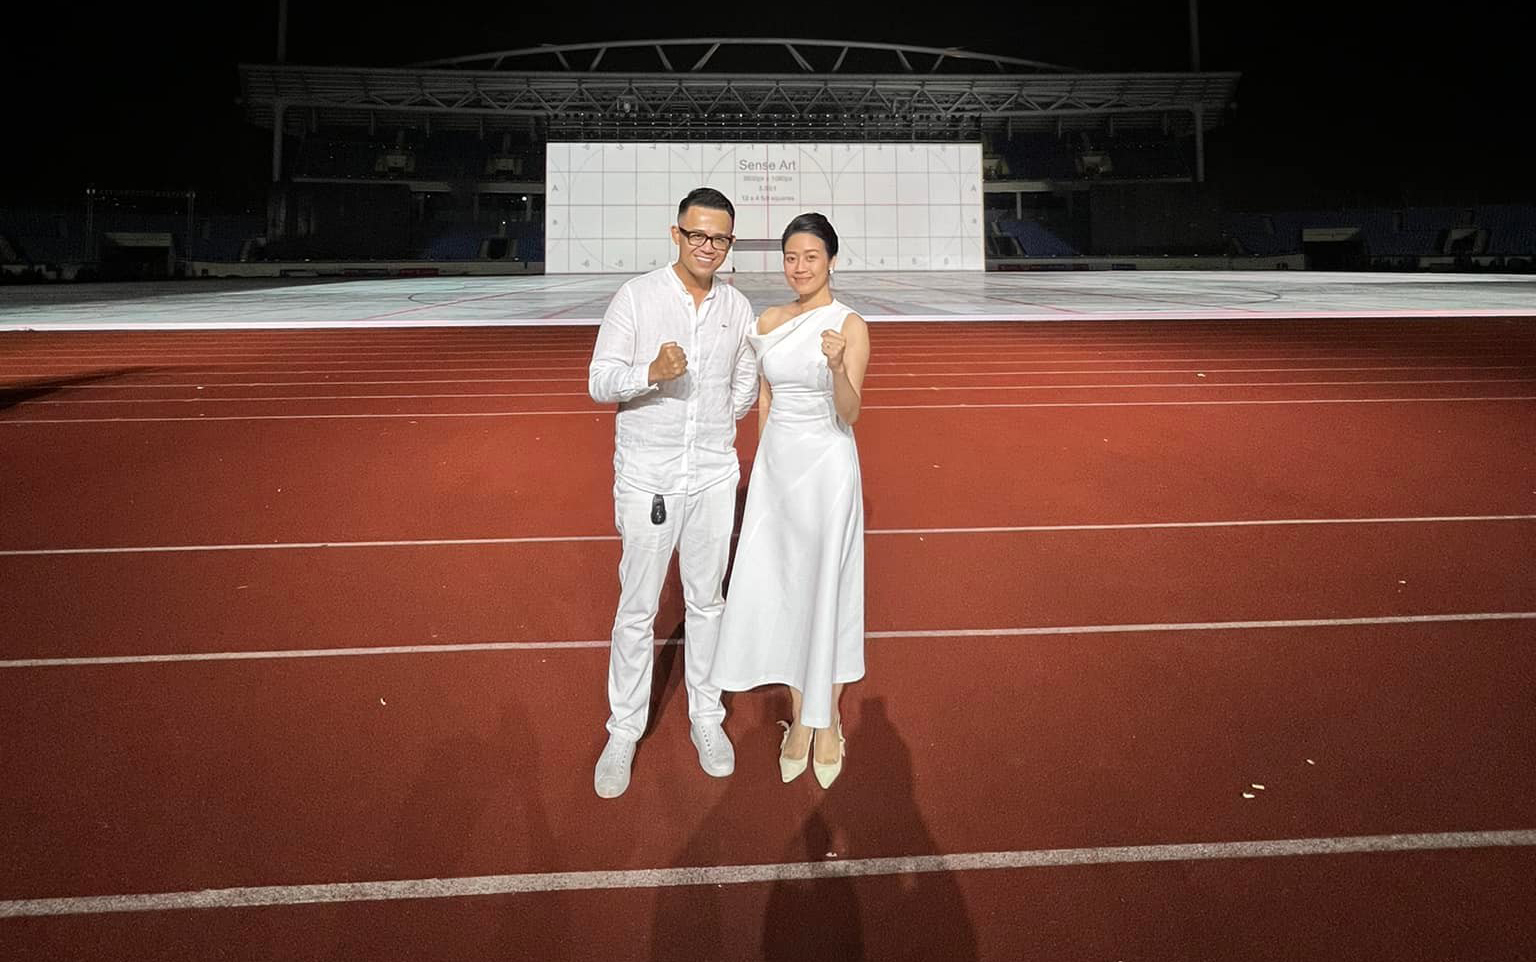 Phí Linh và Đức Bảo là 2 MC dẫn chương trình Lễ khai mạc SEA Games 2022, tổ chức tại Hà Nội vào tối 12/5. Tối 11/5, hai MC đã có buổi diễn tập cuối cùng trước khi sự kiện diễn ra.